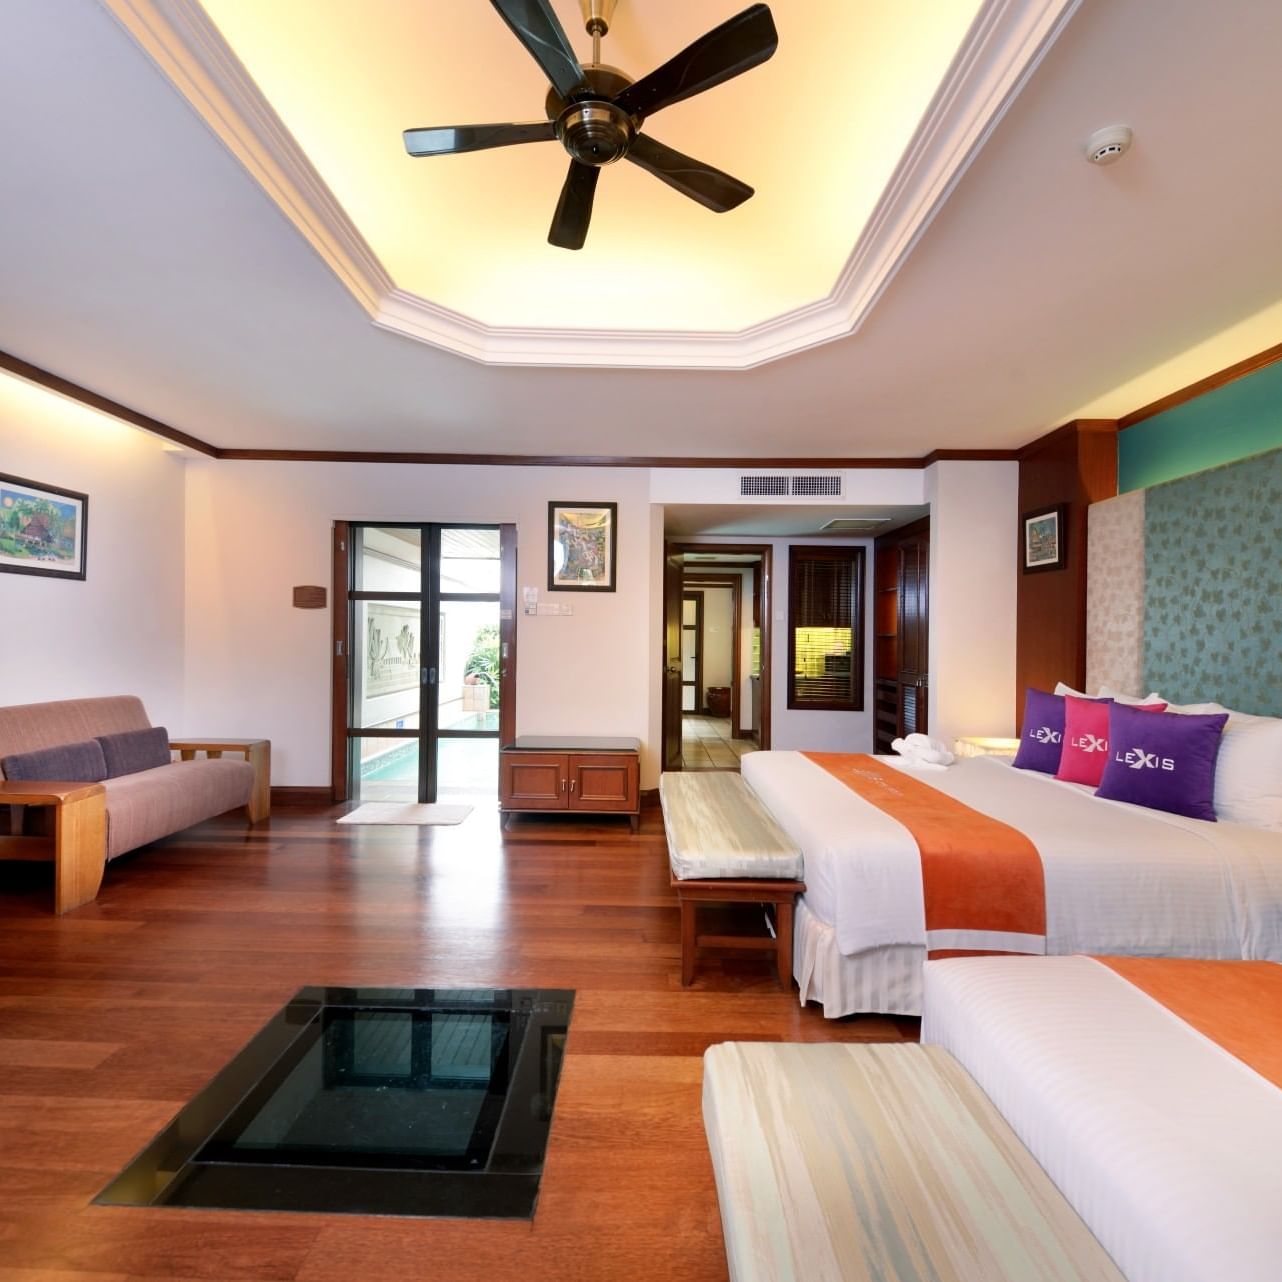 Luxus pur: Traumhafte Hotelzimmer mit privatem Indoor-Pool